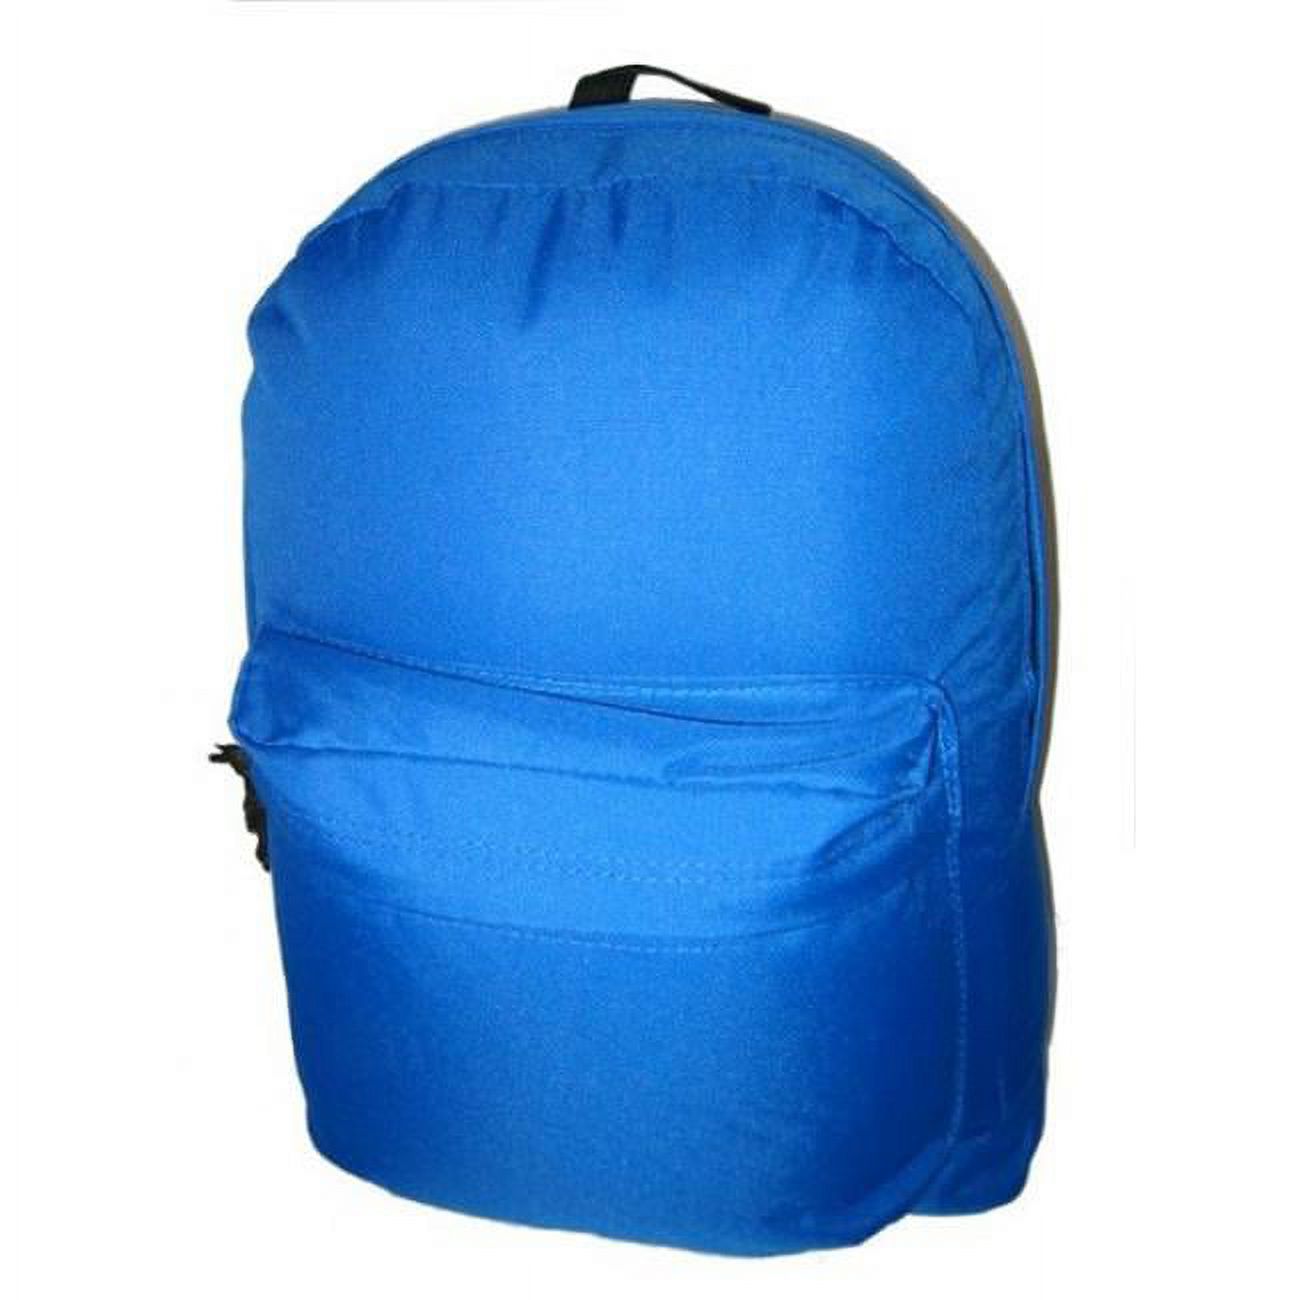 DDI 703114 18" Basic Backpacks - Royal Blue Case of 36 - image 1 of 1